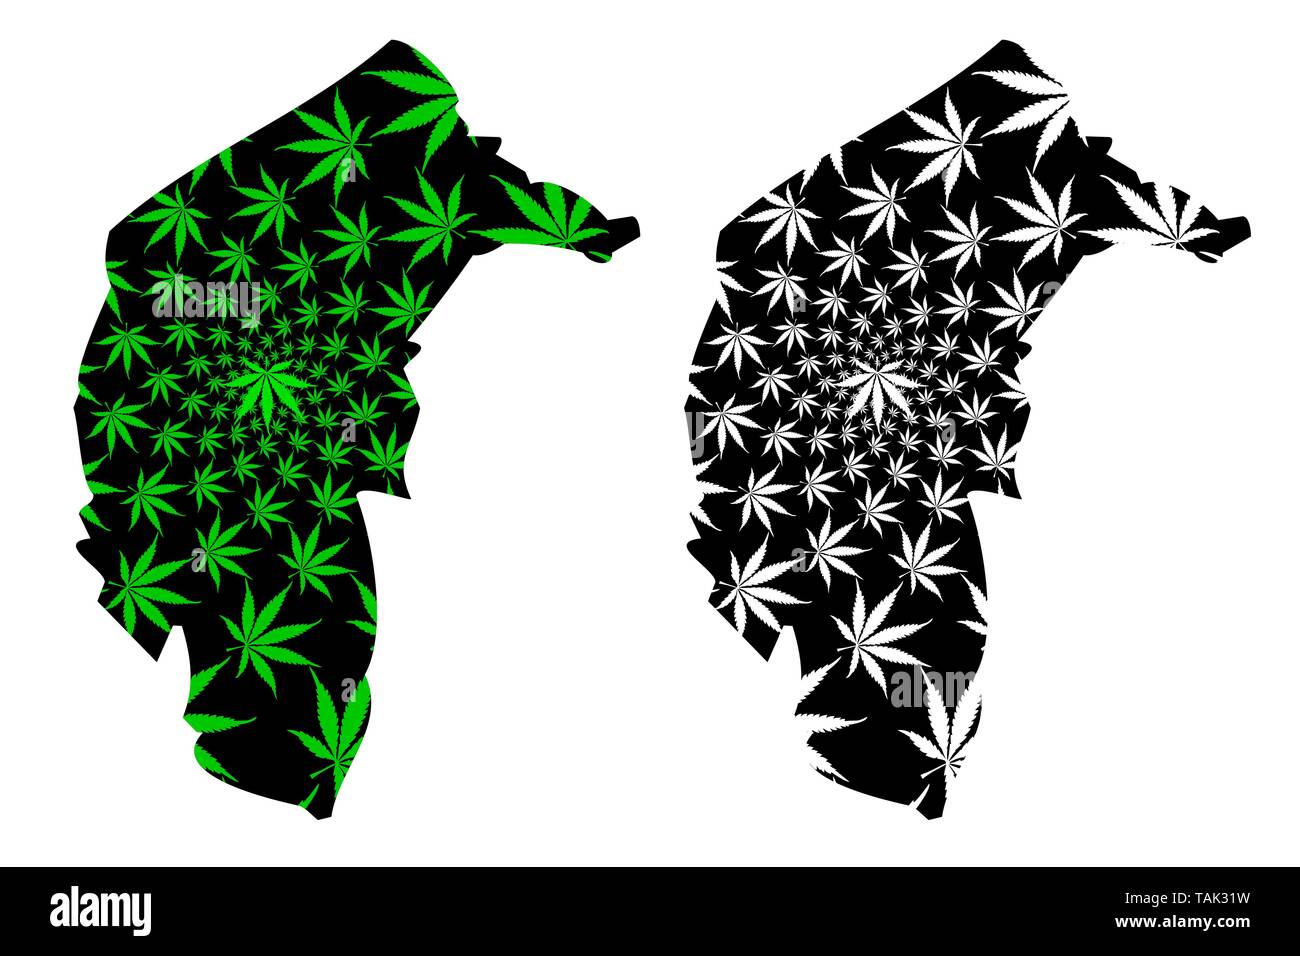 Territoire de la capitale australienne (états et territoires australiens, LOI, Territoire de la capitale fédérale) la carte est conçue de feuilles de cannabis vert et noir, Austra Illustration de Vecteur